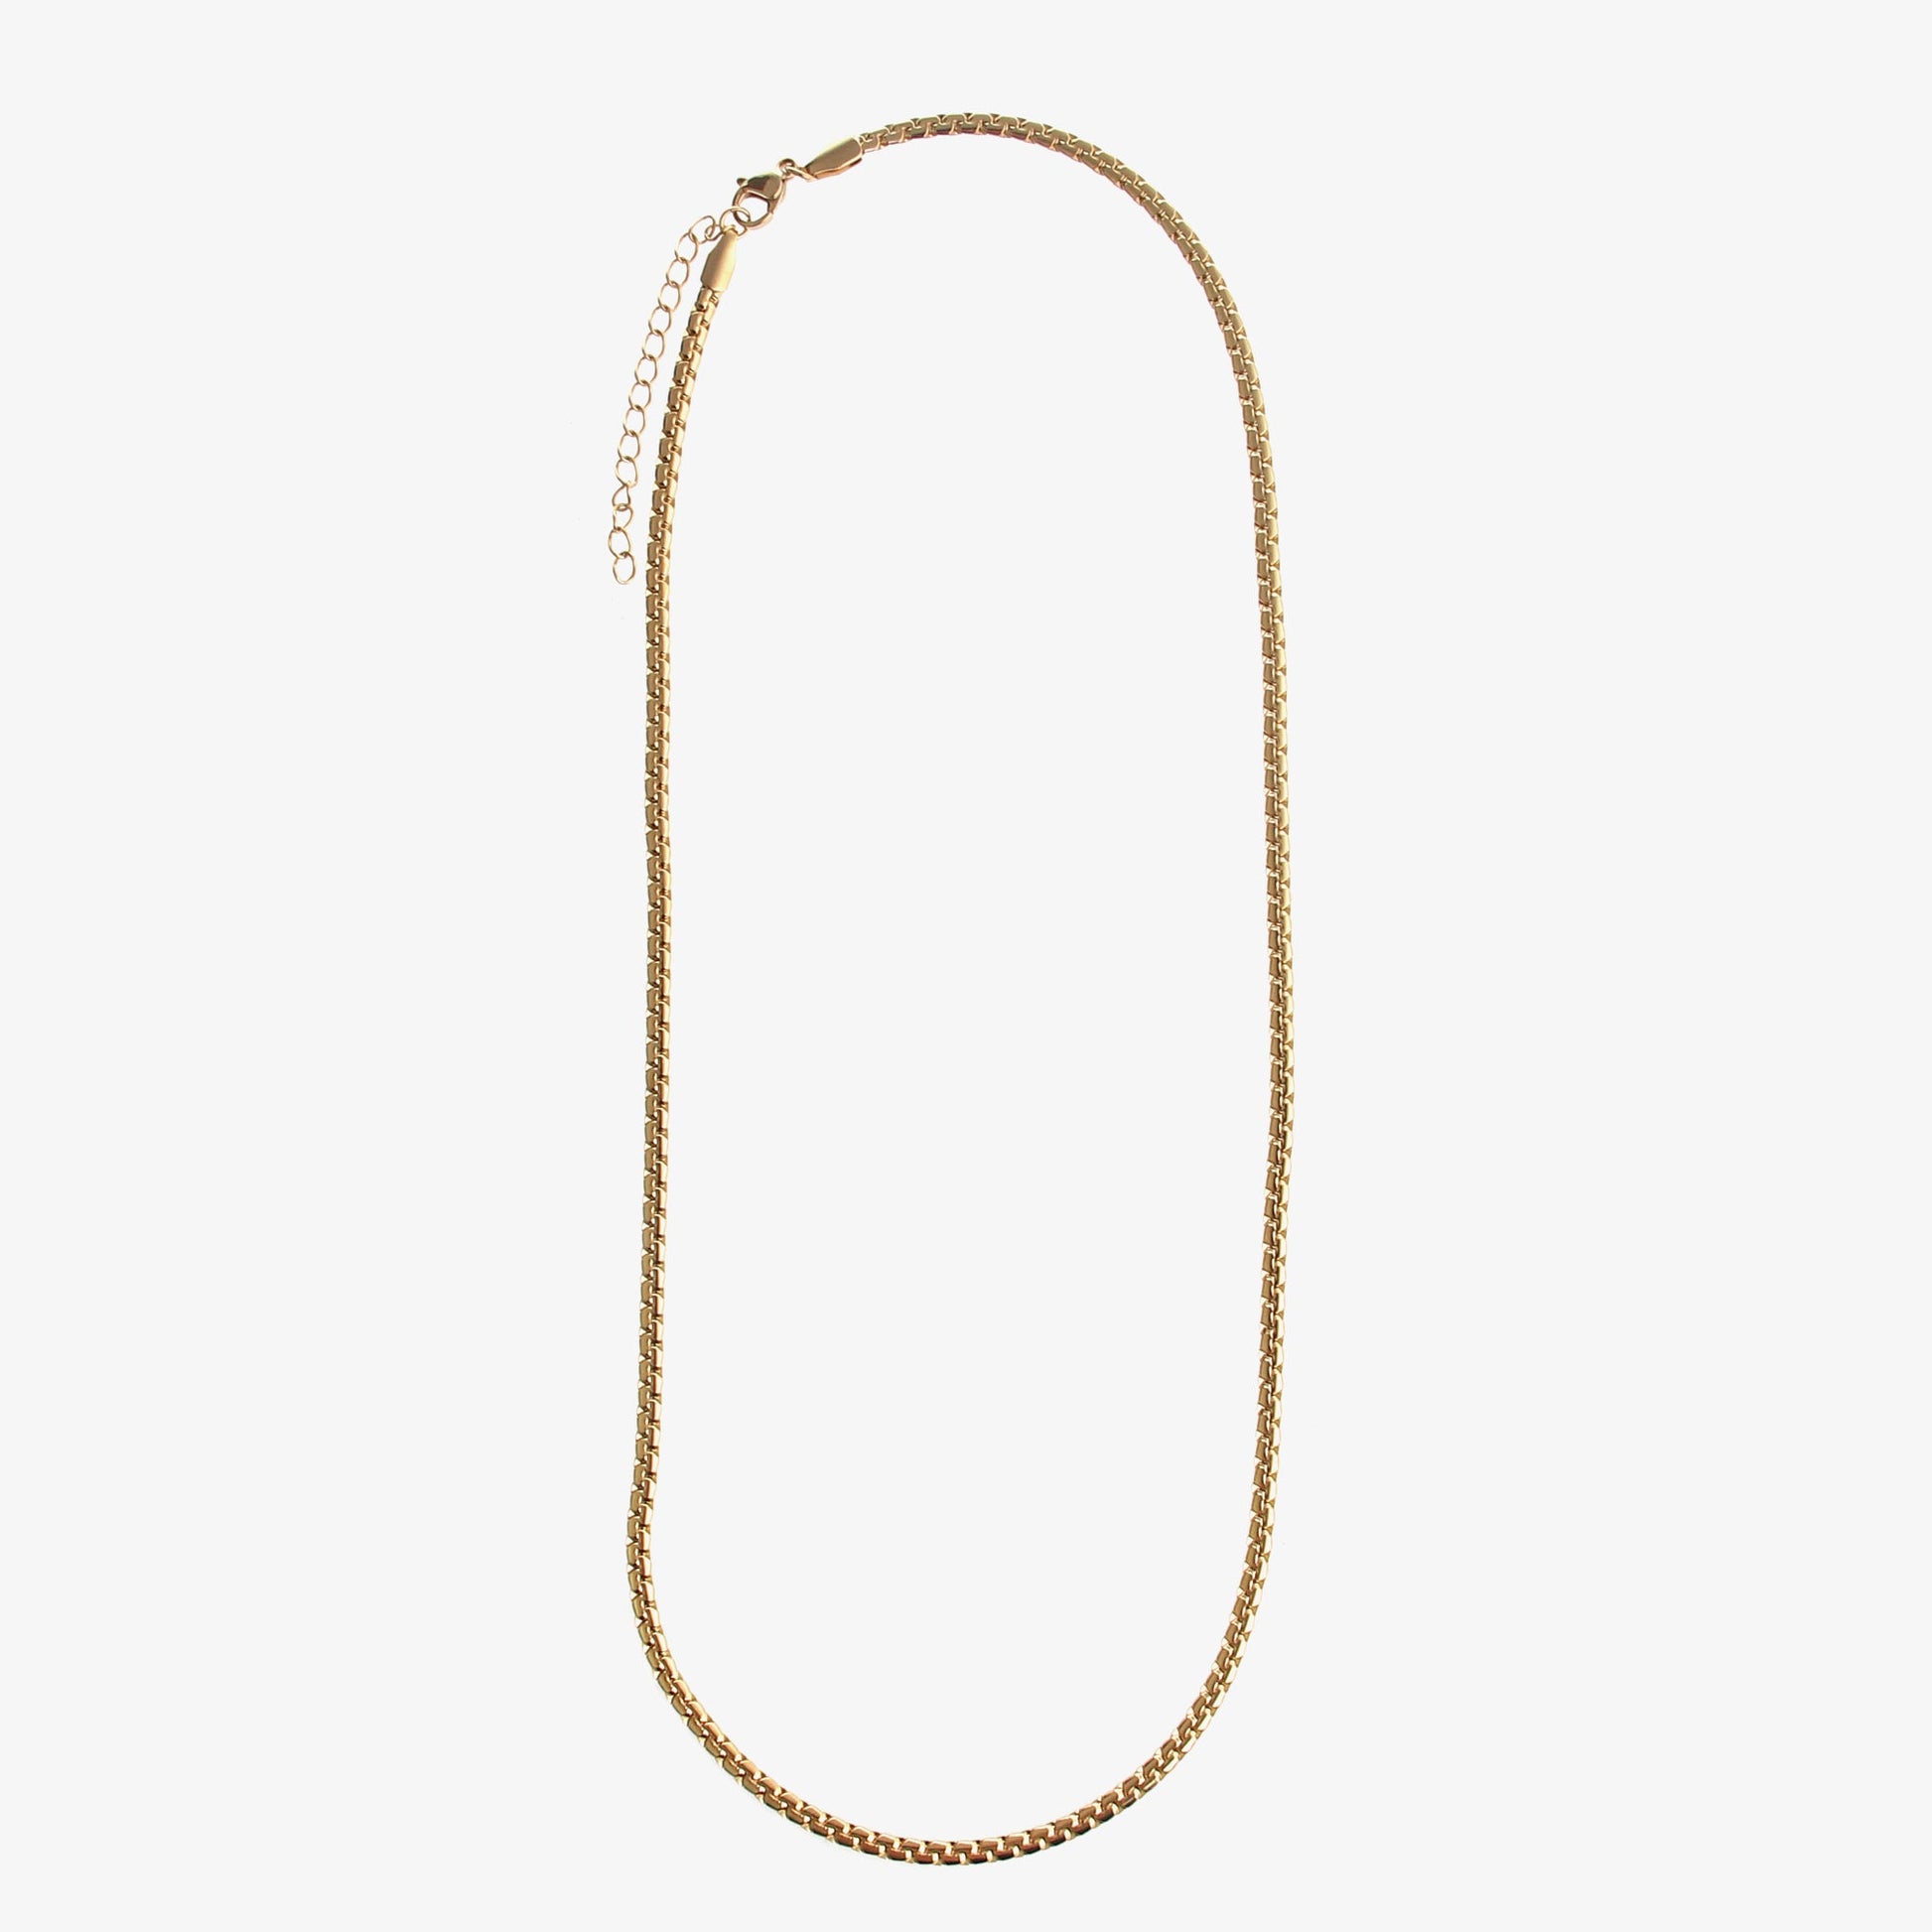 Embossed Cuban Necklace For Men - NextthinkShop0CJLX174929604DW0